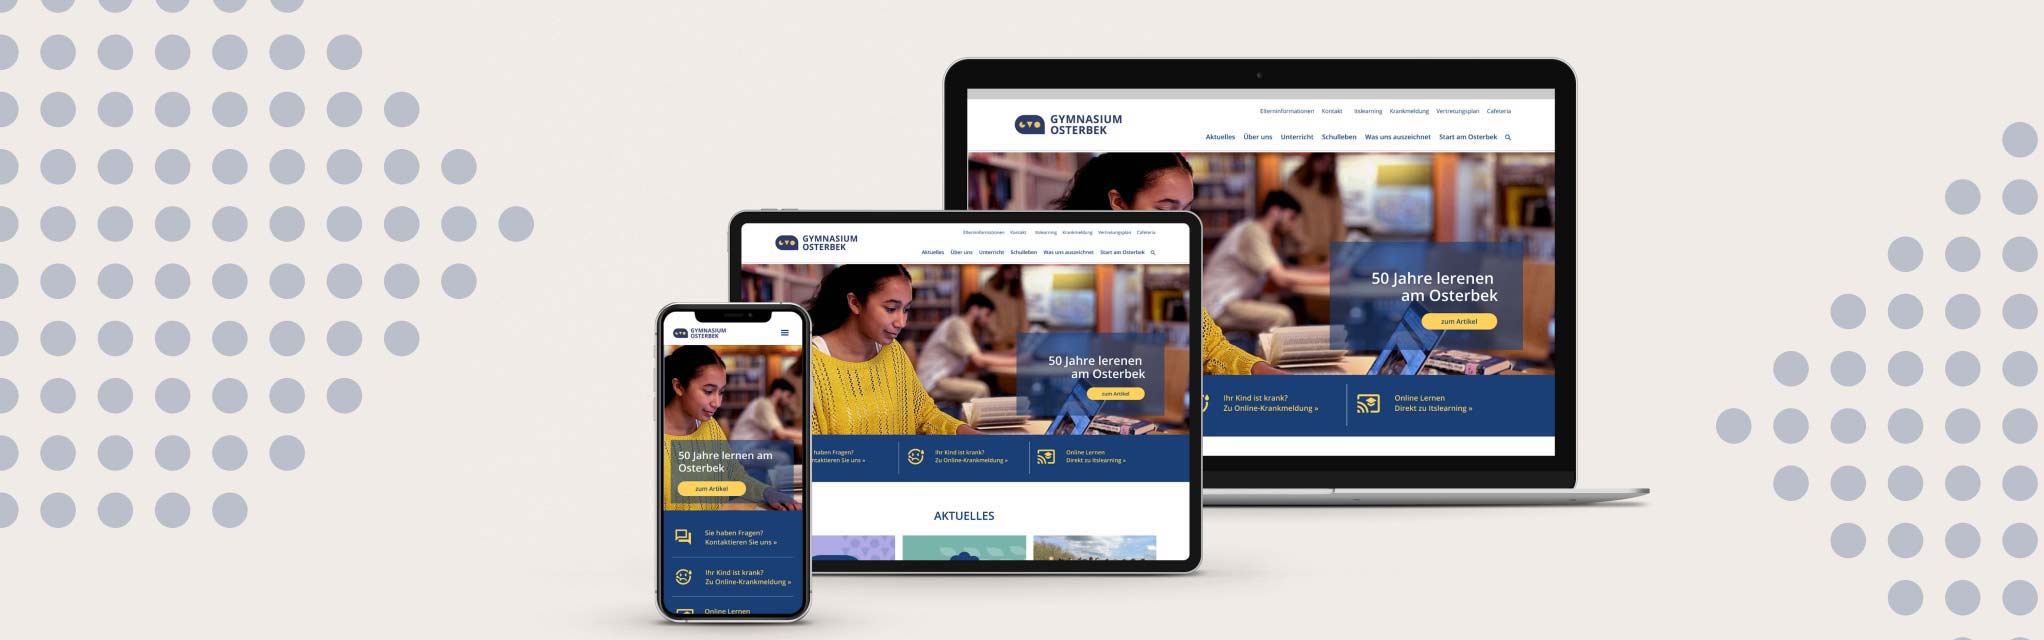 Die neue Homepage des Gymnasium Osterbek - angezeigt auf iPhone, iPad und Macbook als Präsentatuion